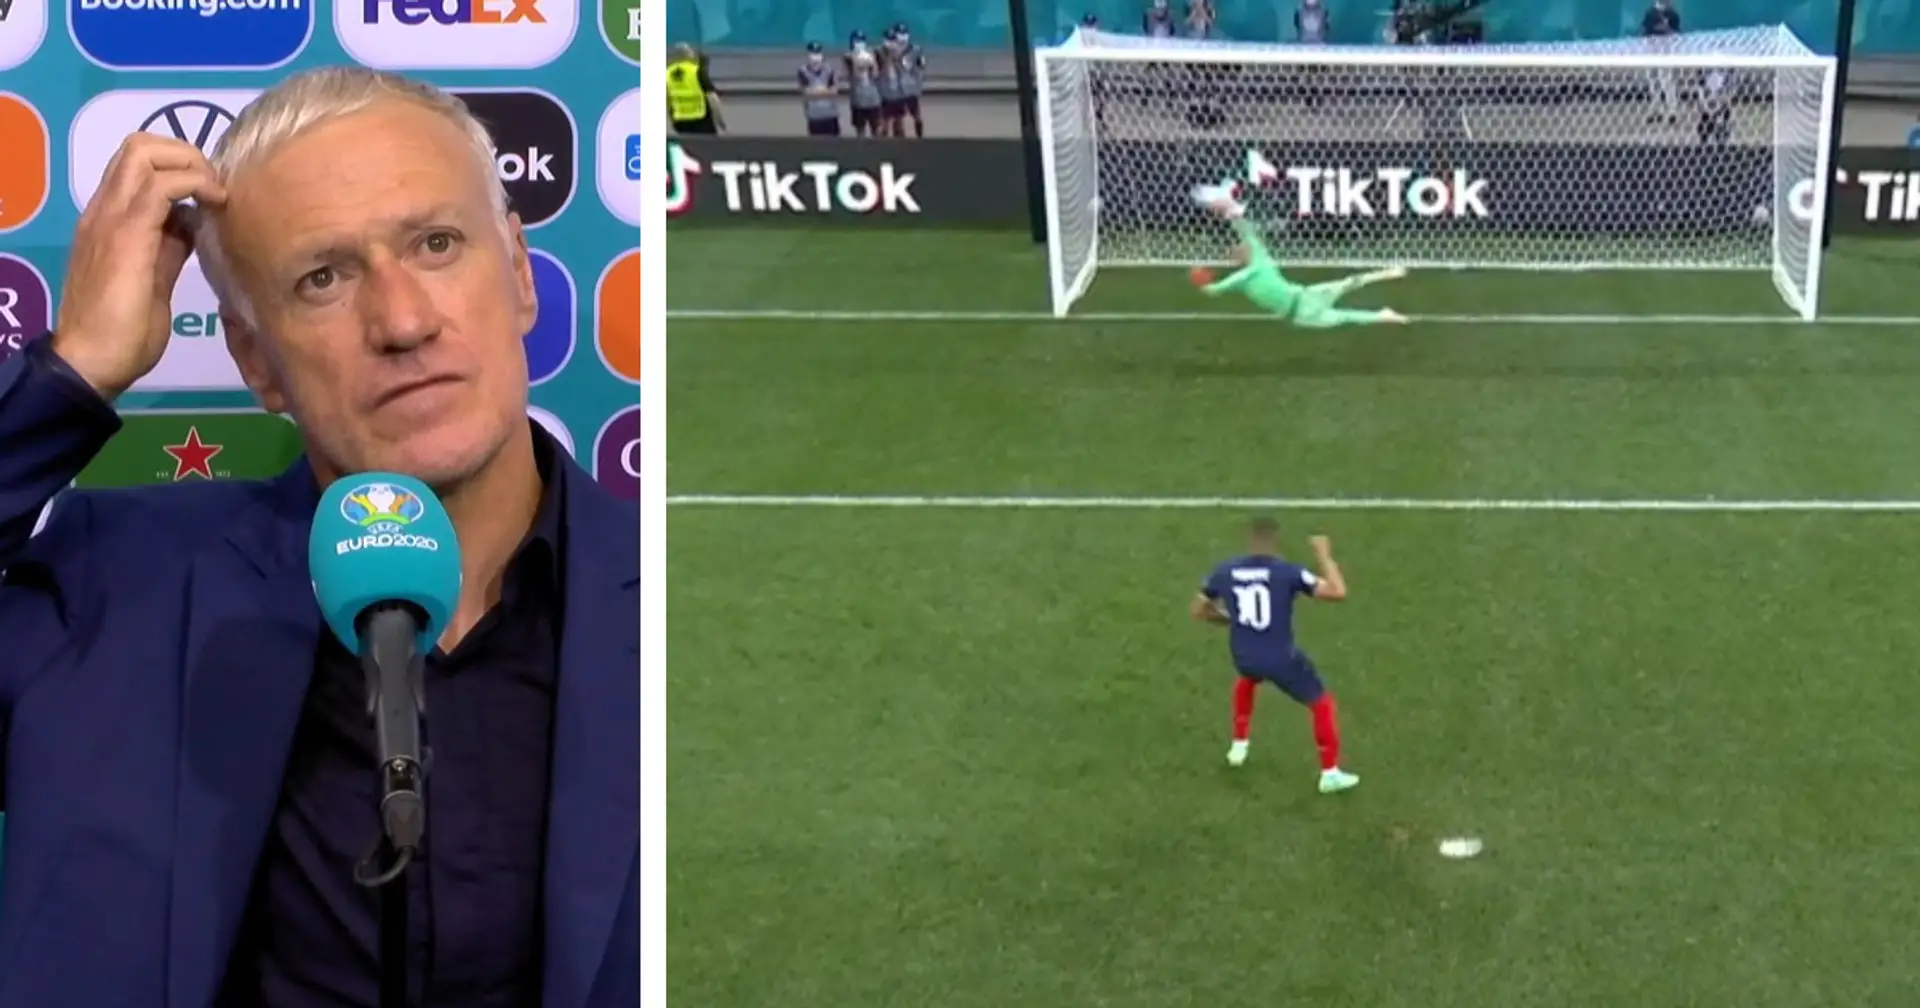 "Personne ne peut lui en vouloir, ça peut arriver": Didier Deschamps réagit au penalty raté de Mbappé 